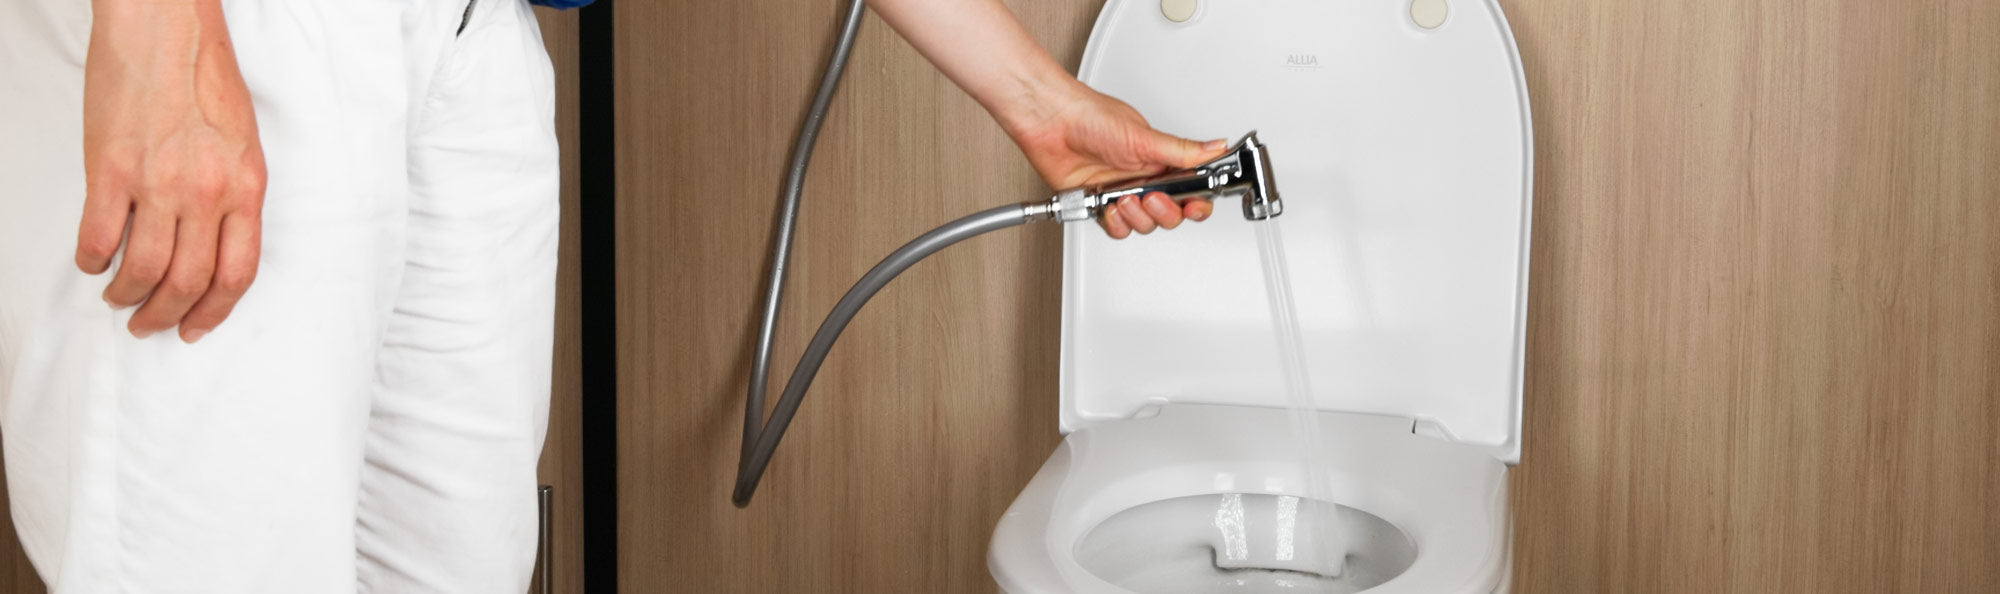 Pompe à déboucher les WC et appareils sanitaires